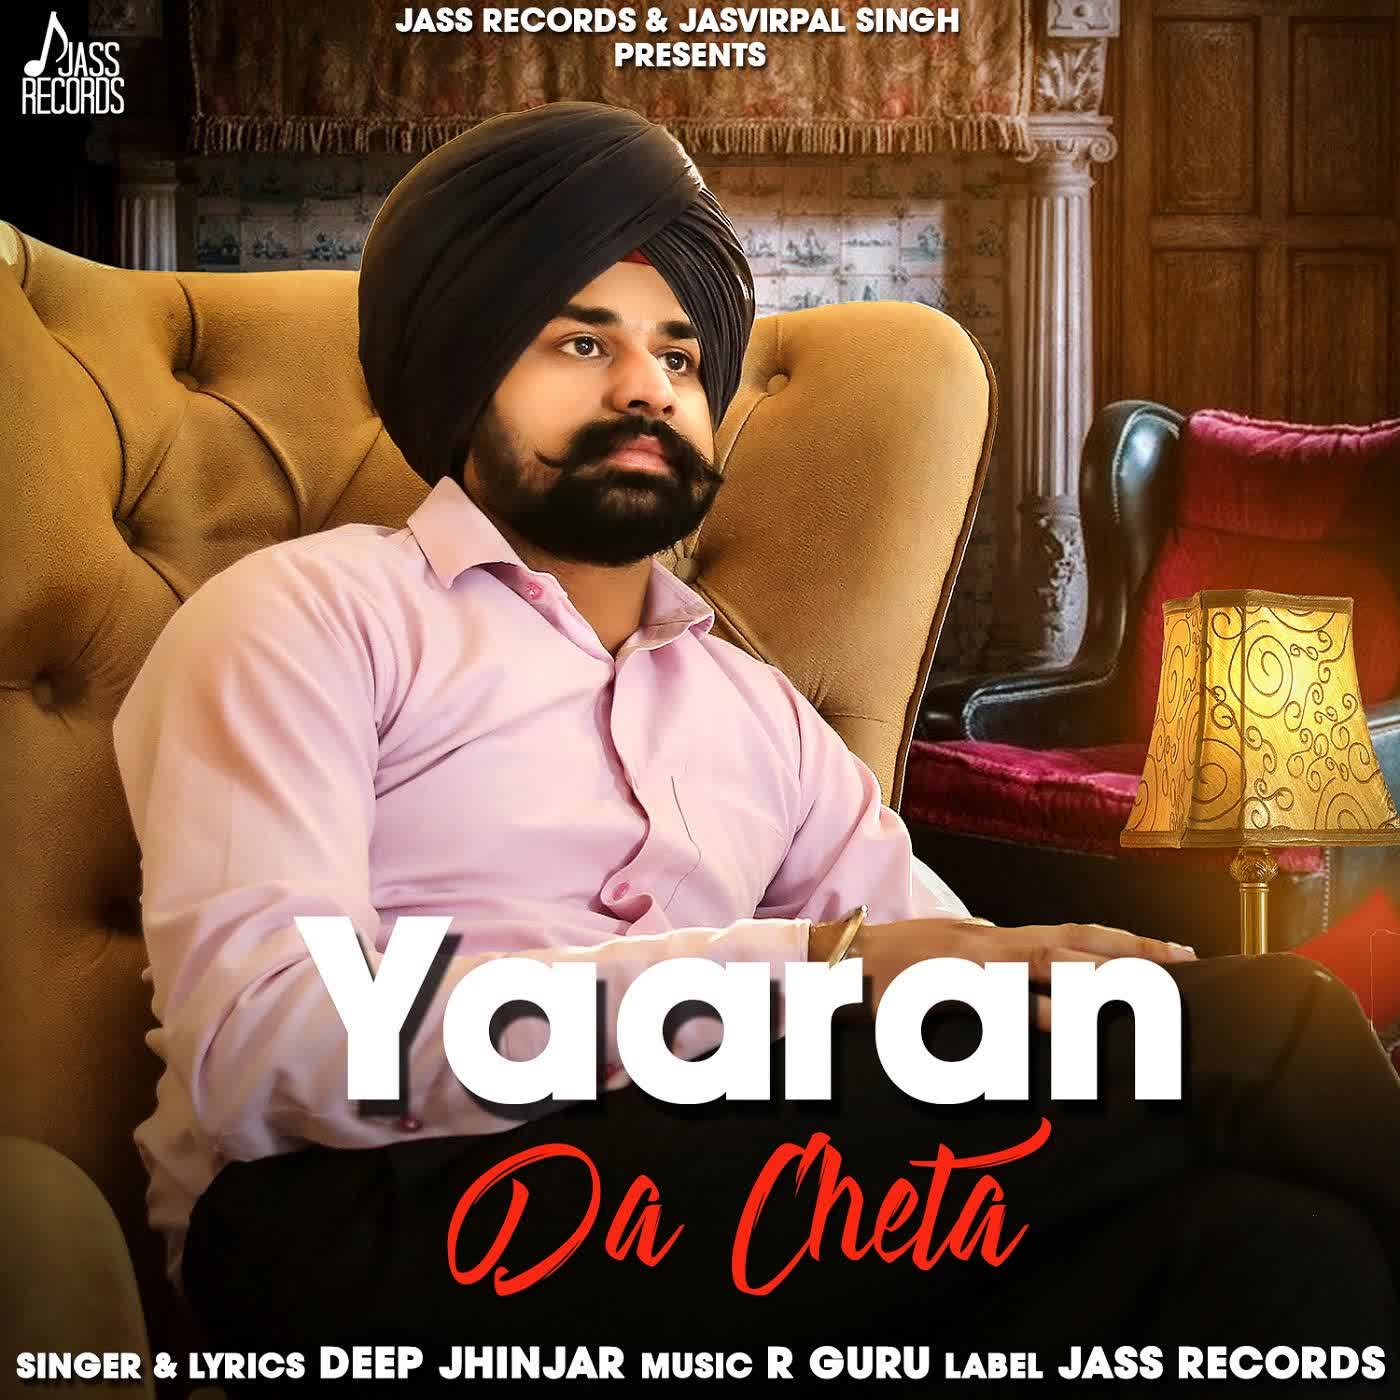 Yaaran Da Cheta Deep Jhinjar mp3 song